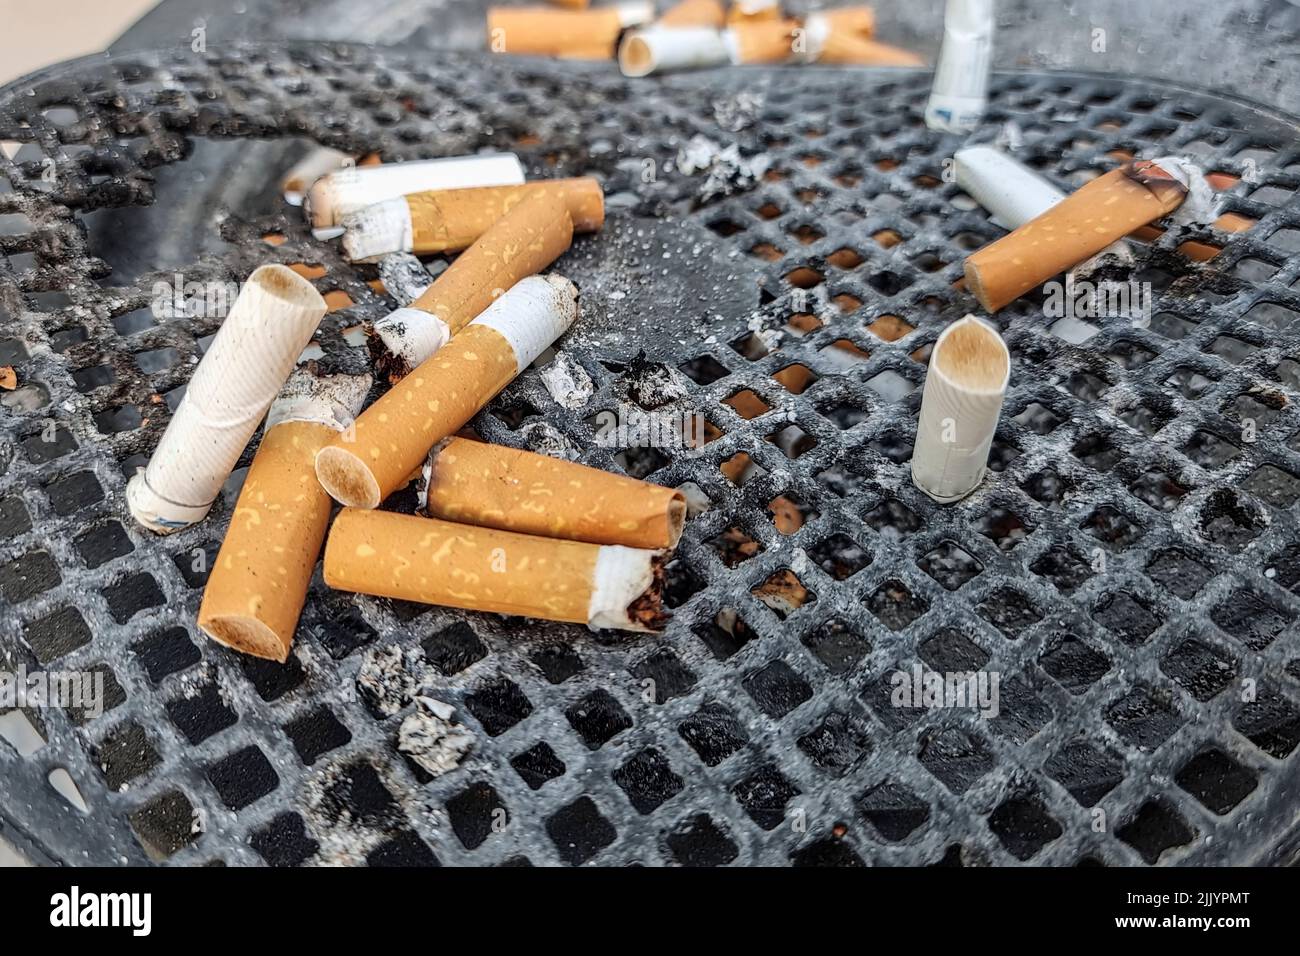 Colillas de cigarrillos tiradas en una papelera de tabaco, adicción al humo, estilo de vida poco saludable Foto de stock